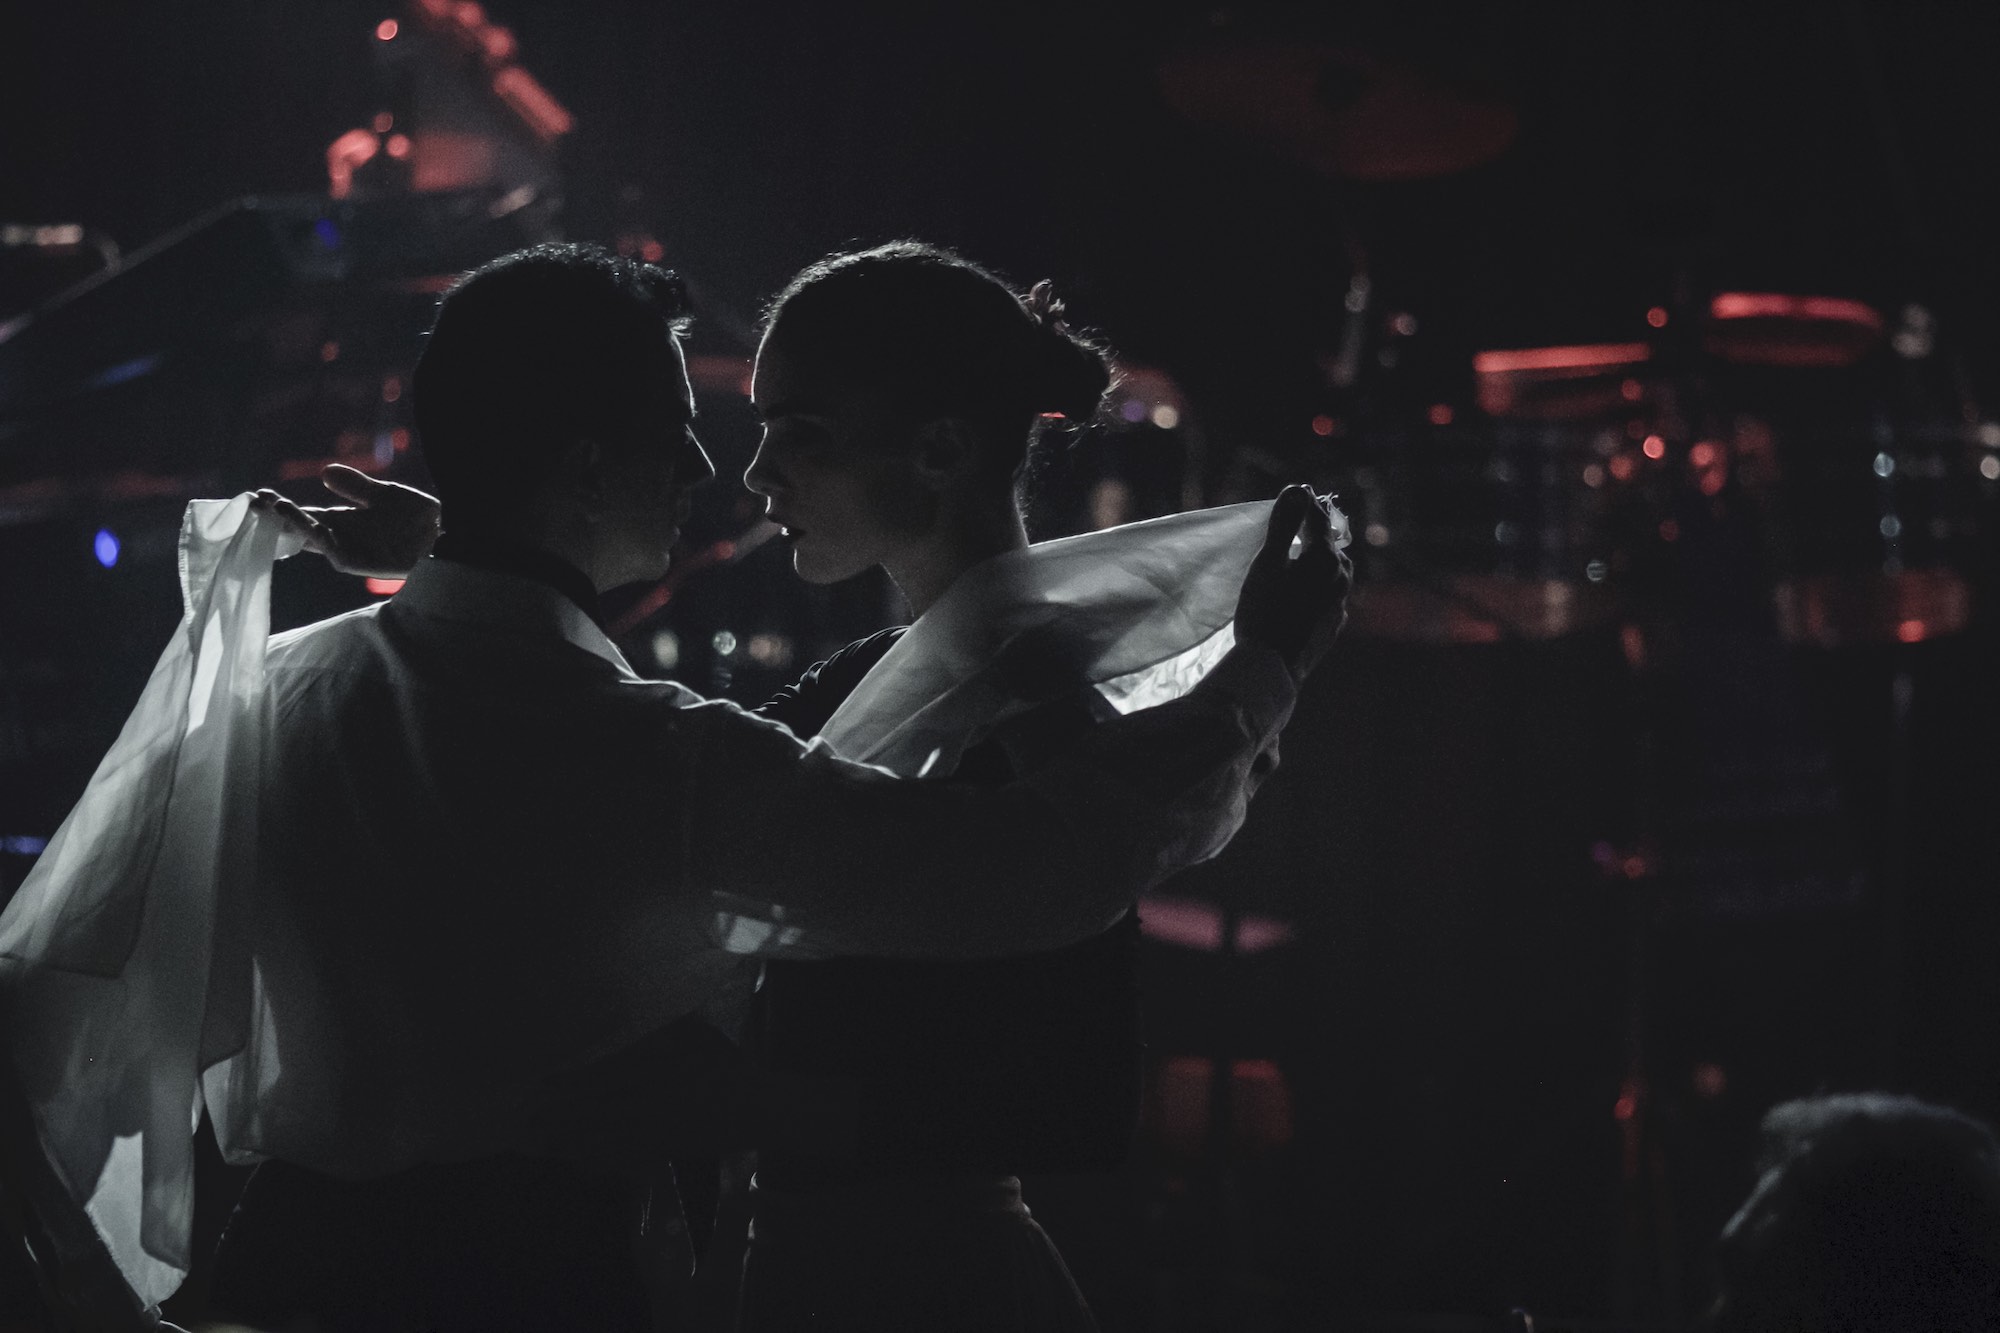 Ο Ariel Perez και η Margarita Plessa χορεύουν zamba στο σκοτάδι κρατώντας μαντίλια στα χέρια τους.